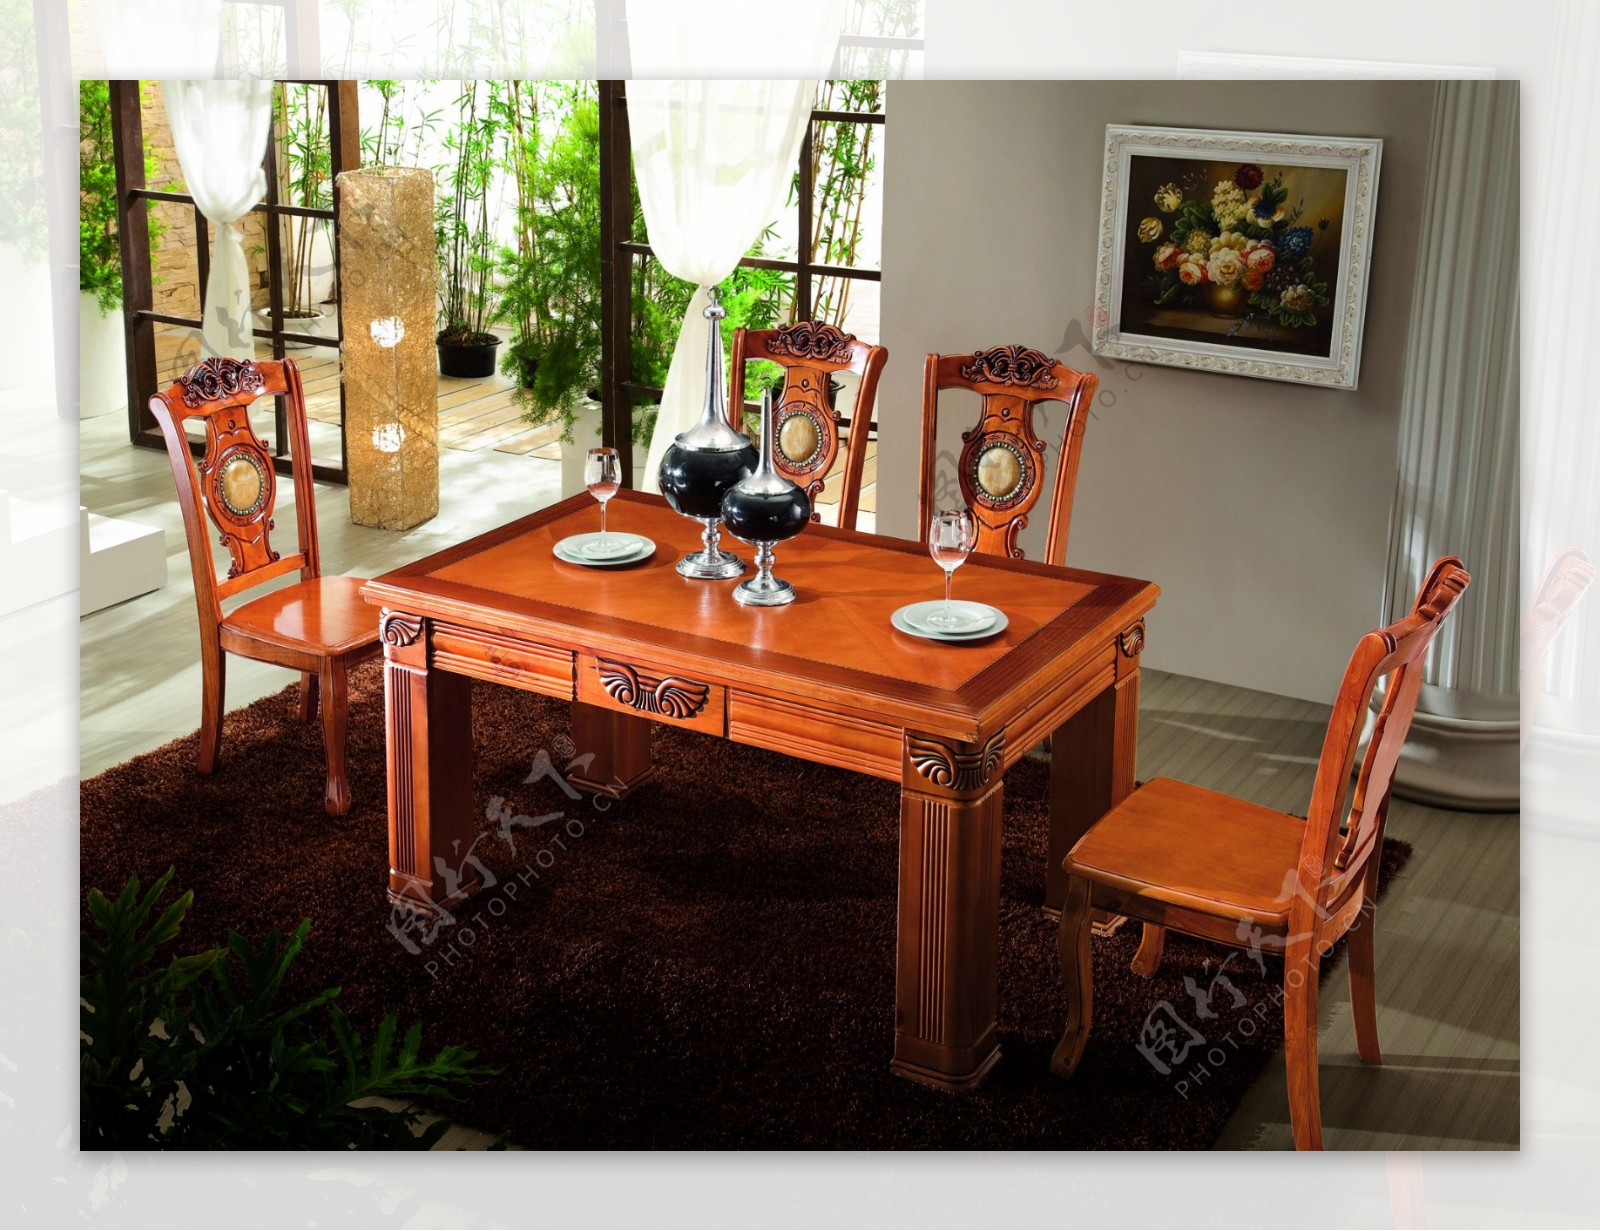 实木餐台餐椅图片实木餐台餐椅背景